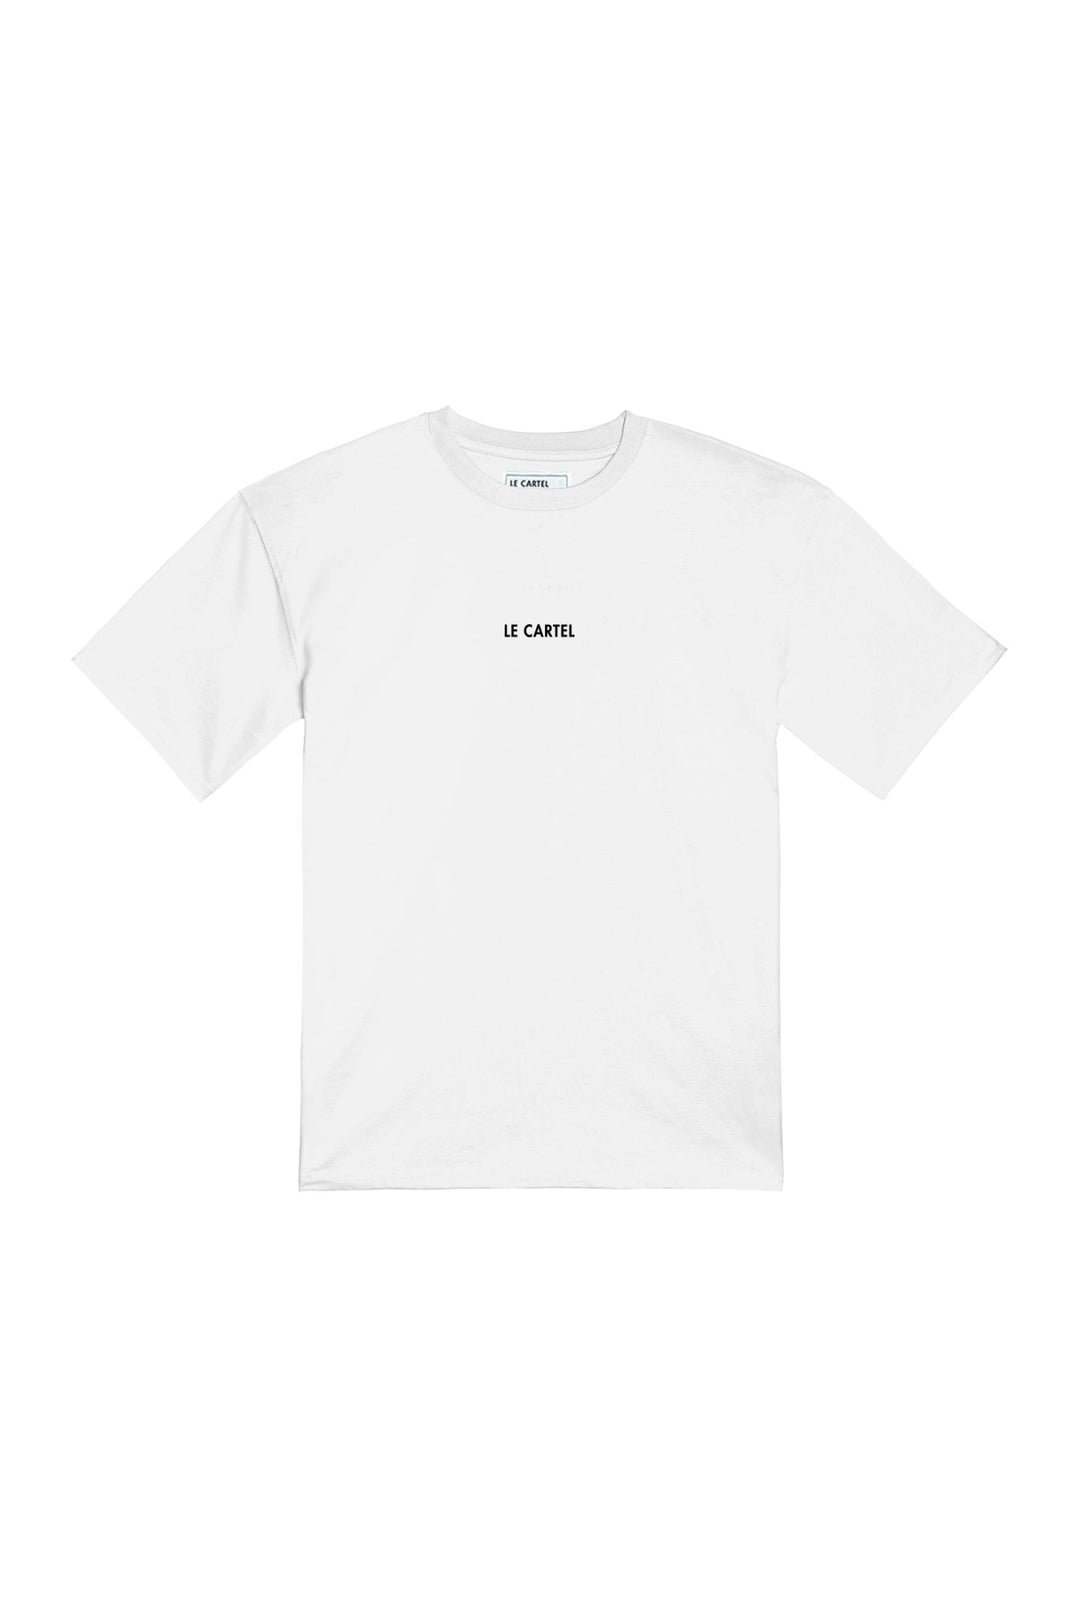 VOIR LES FLEURS・T-shirt unisexe・Blanc - Le Cartel